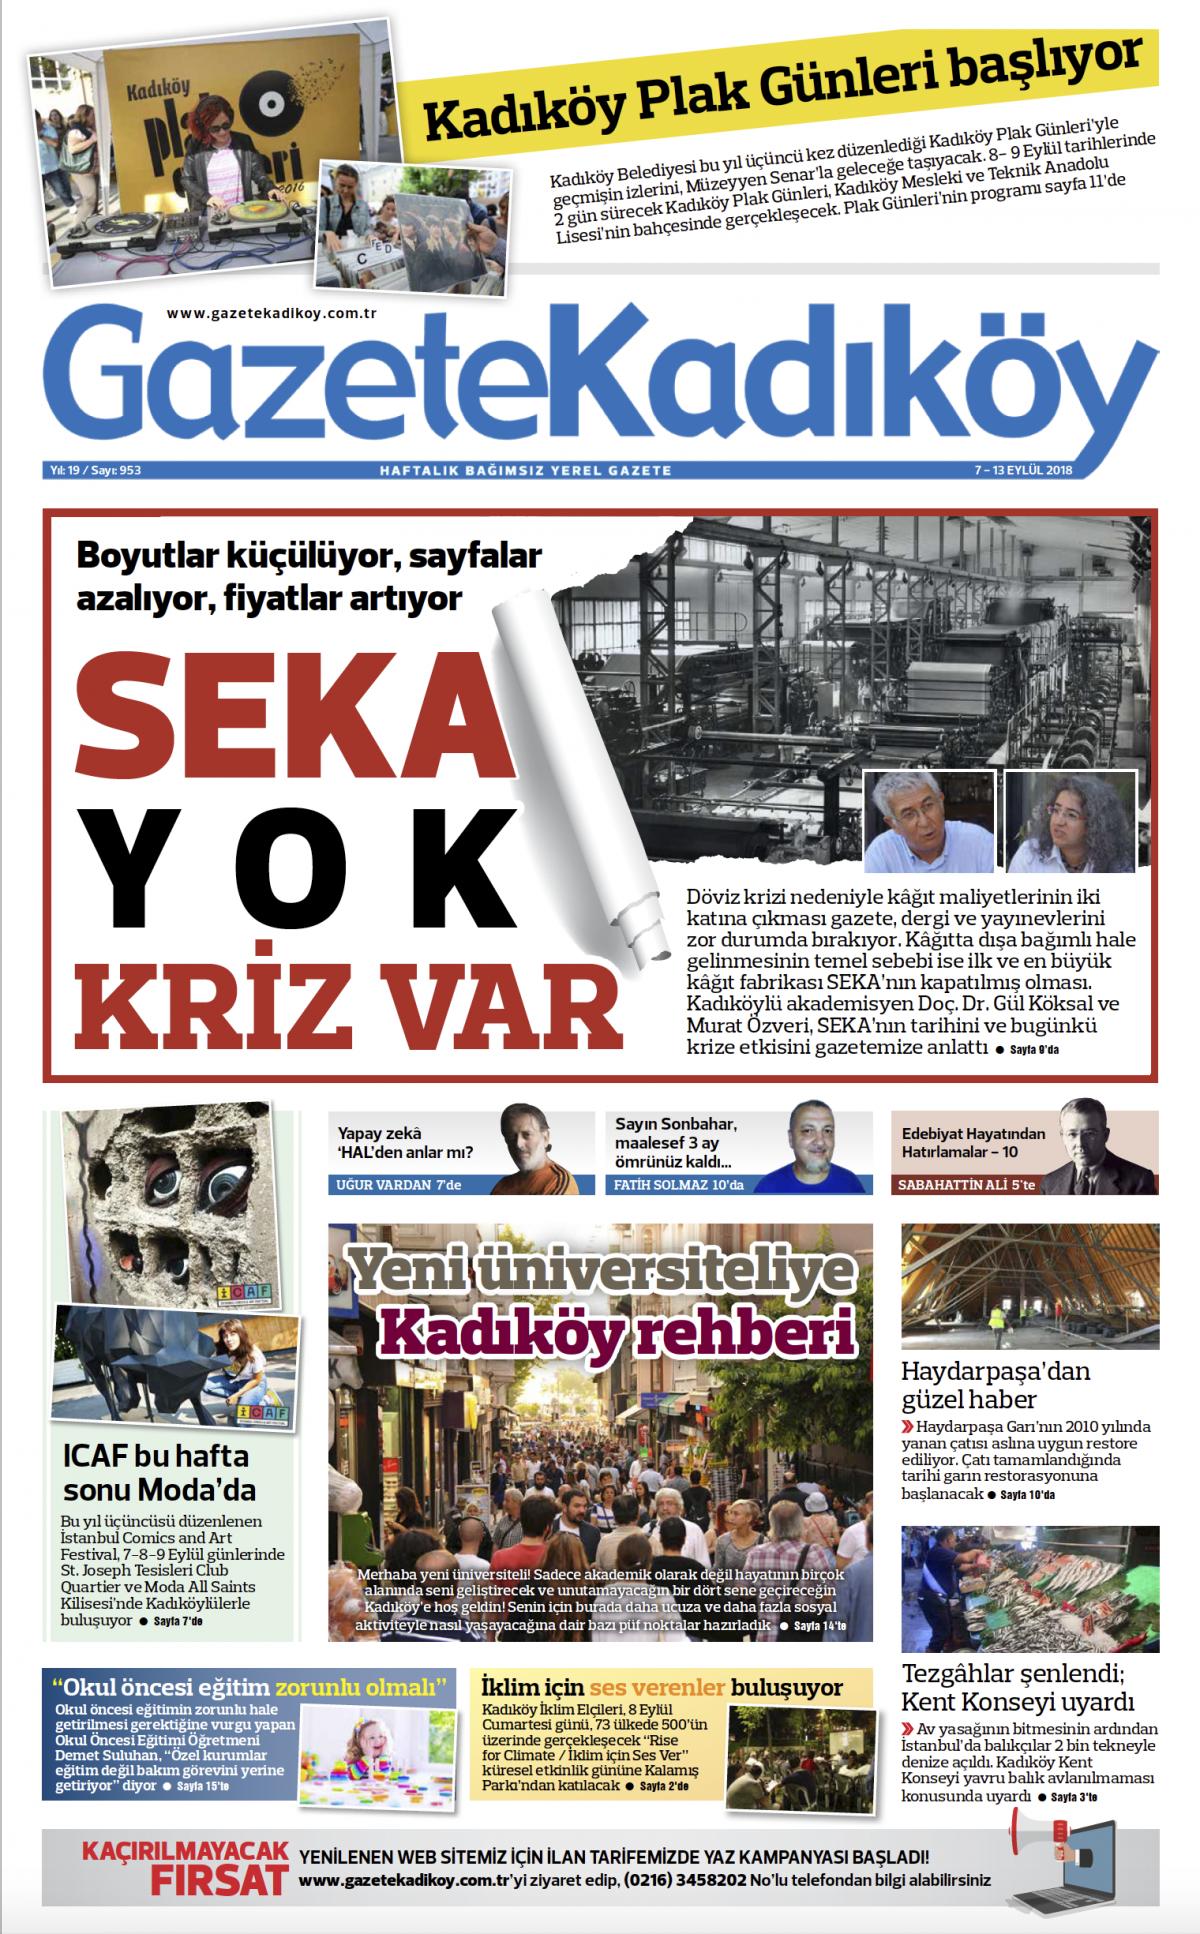 Gazete Kadıköy - 9523. SAYI